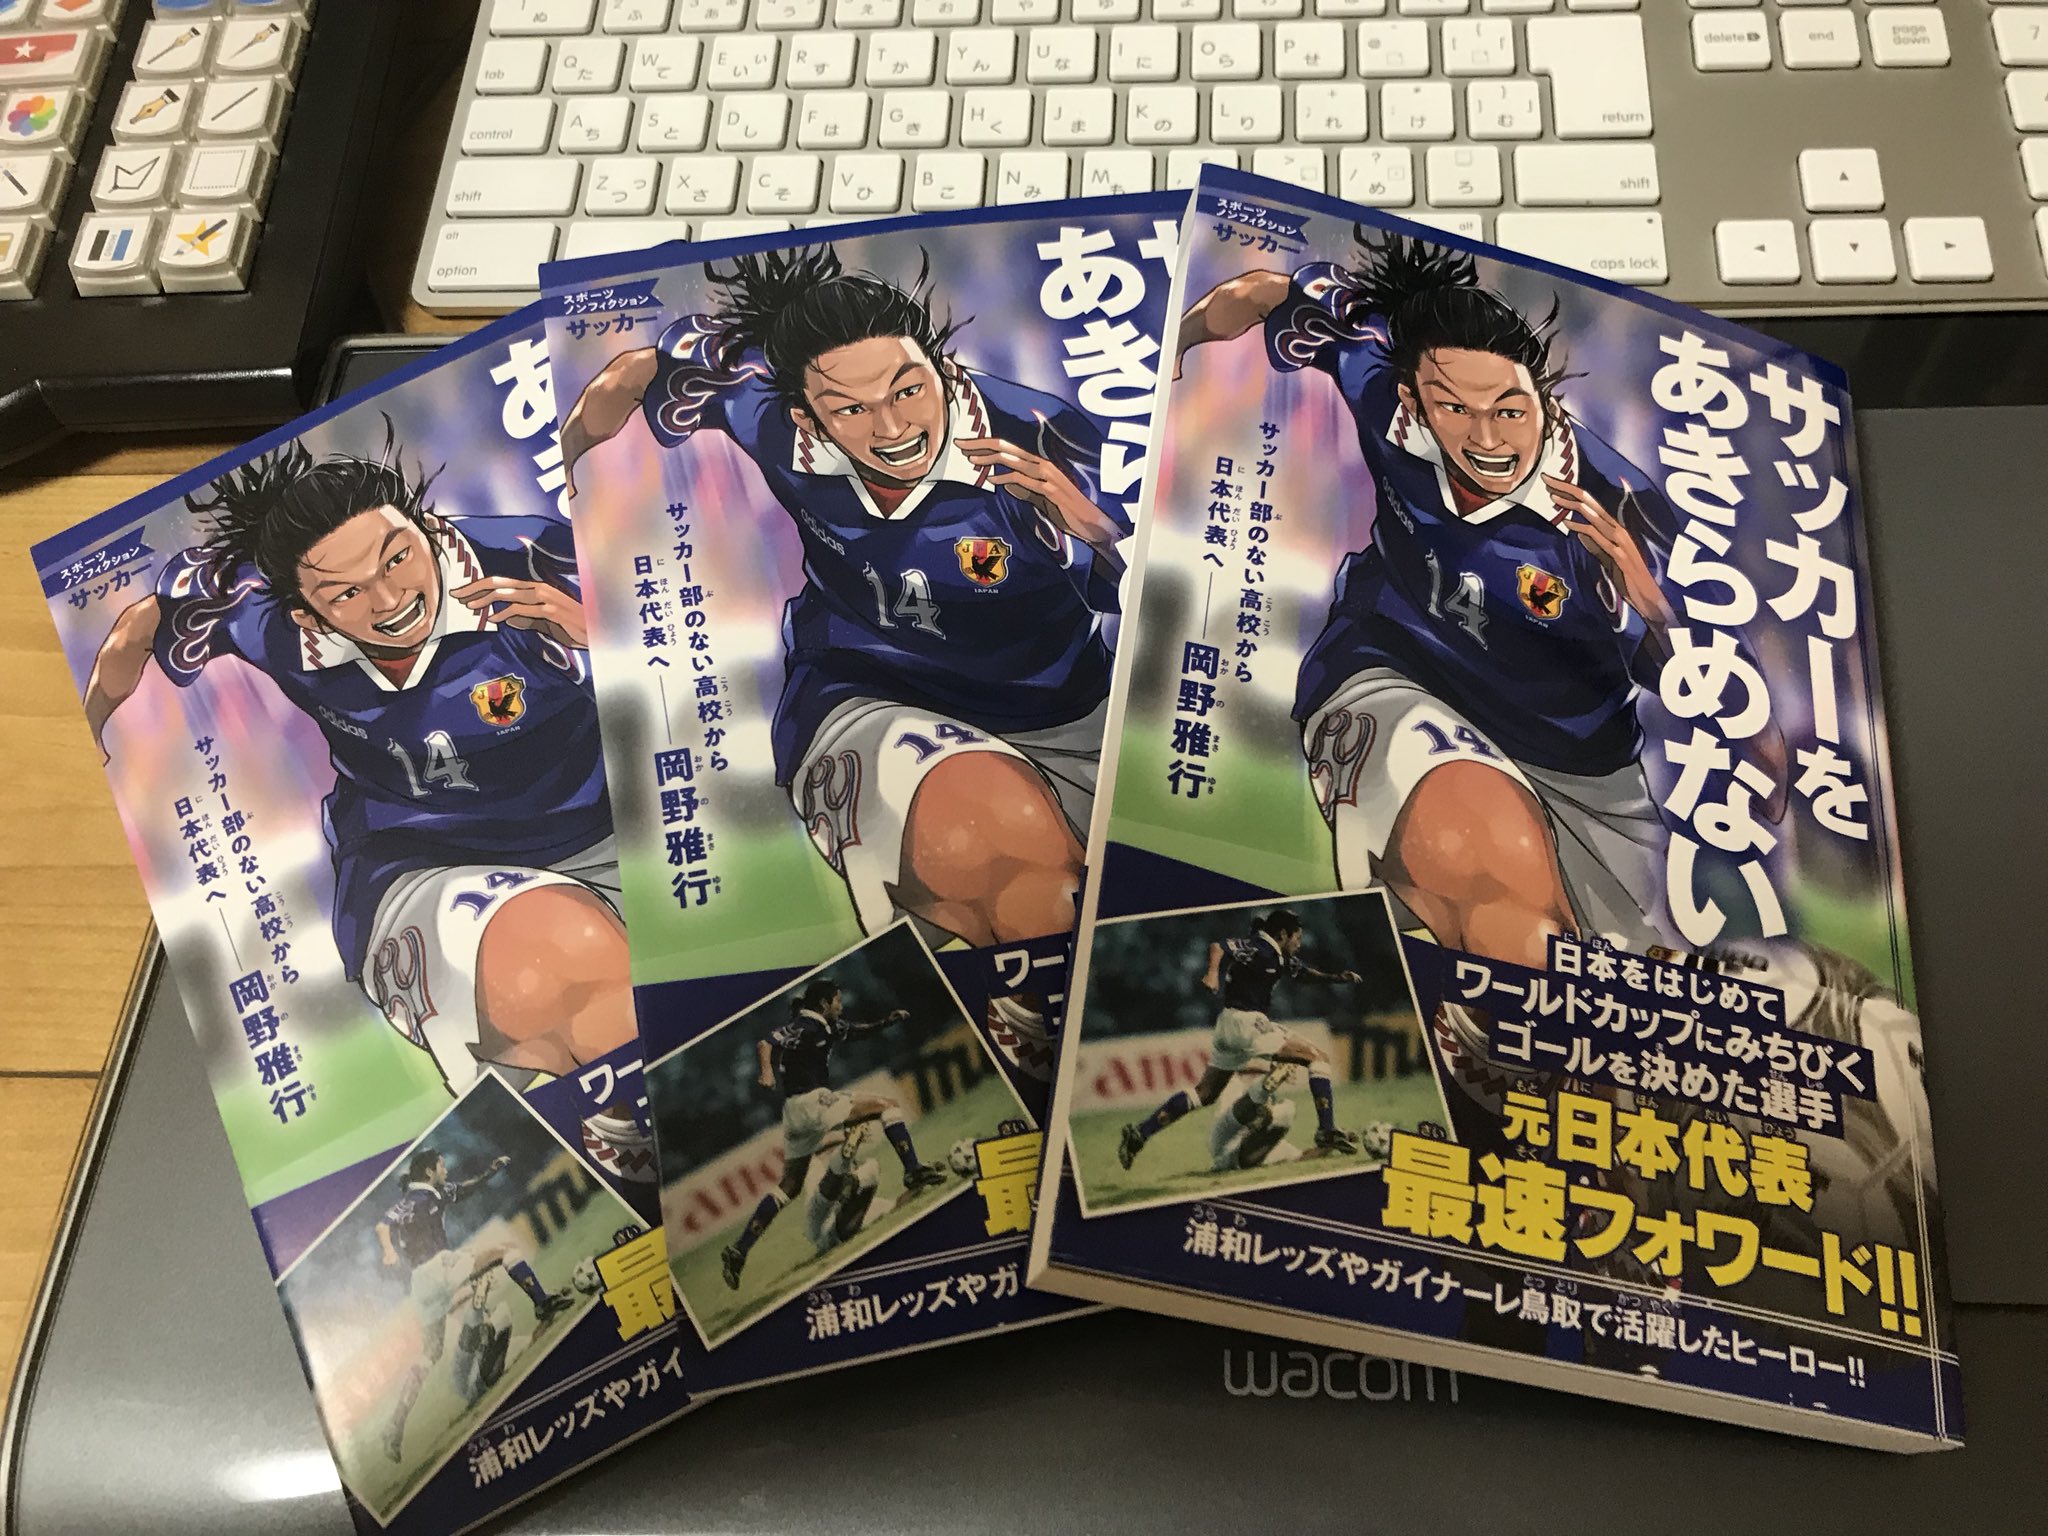 布施龍太 告知 サッカー日本代表をはじめてワールドカップにみちびいた岡野選手の物語 サッカーをあきらめない 表紙描かせていただきました T Co Geqggesjcu サッカー 日本代表 T Co 6rdndhlcb1 Twitter